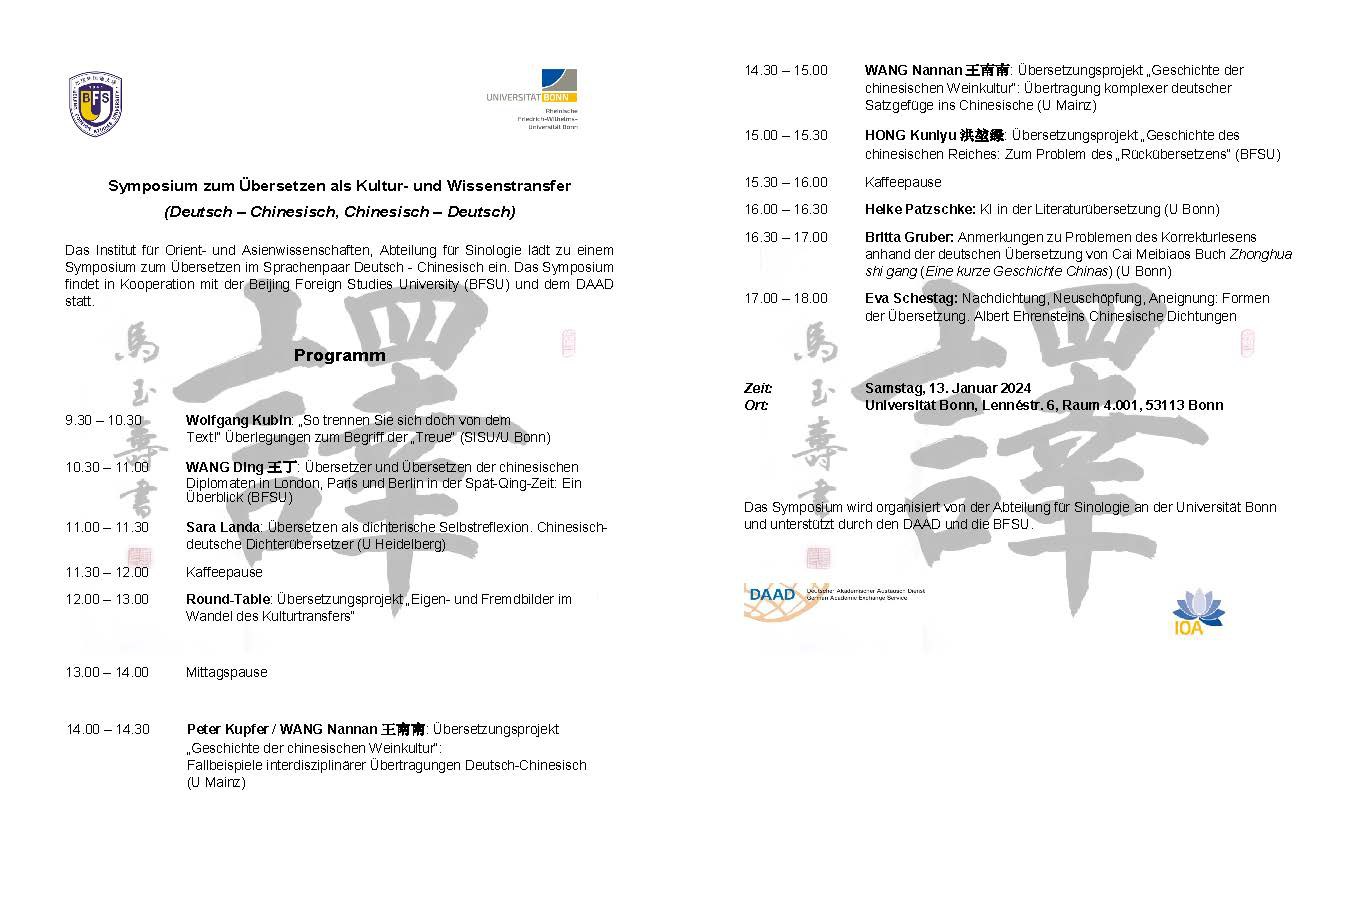 Symposium zum Übersetzen als Kultur- und Wissenstransfer